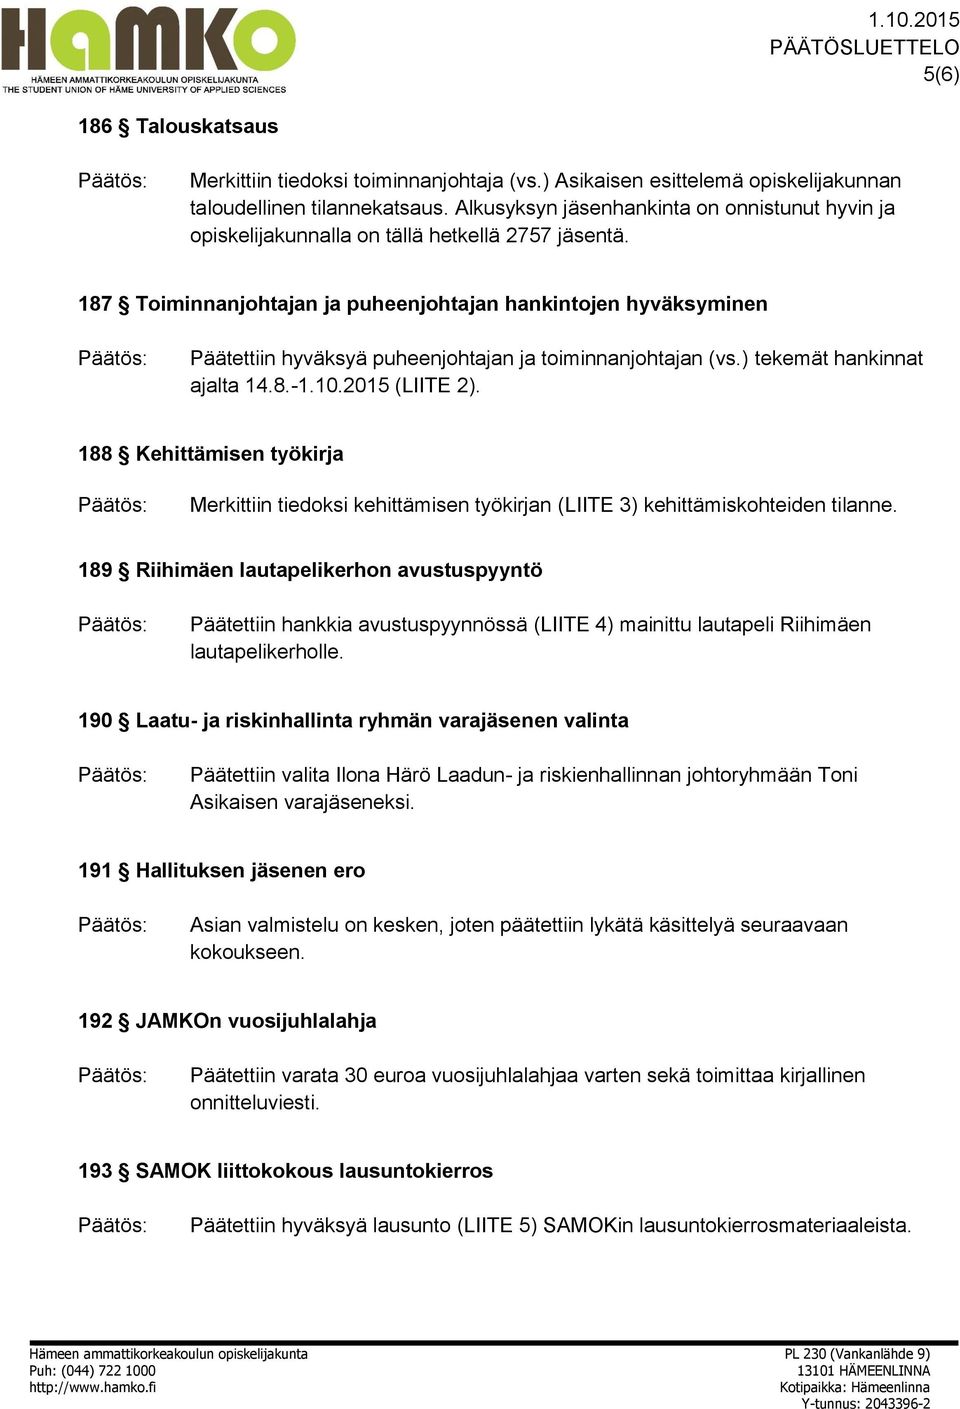 187 Toiminnanjohtajan ja puheenjohtajan hankintojen hyväksyminen Päätettiin hyväksyä puheenjohtajan ja toiminnanjohtajan (vs.) tekemät hankinnat ajalta 14.8.-1.10.2015 (LIITE 2).